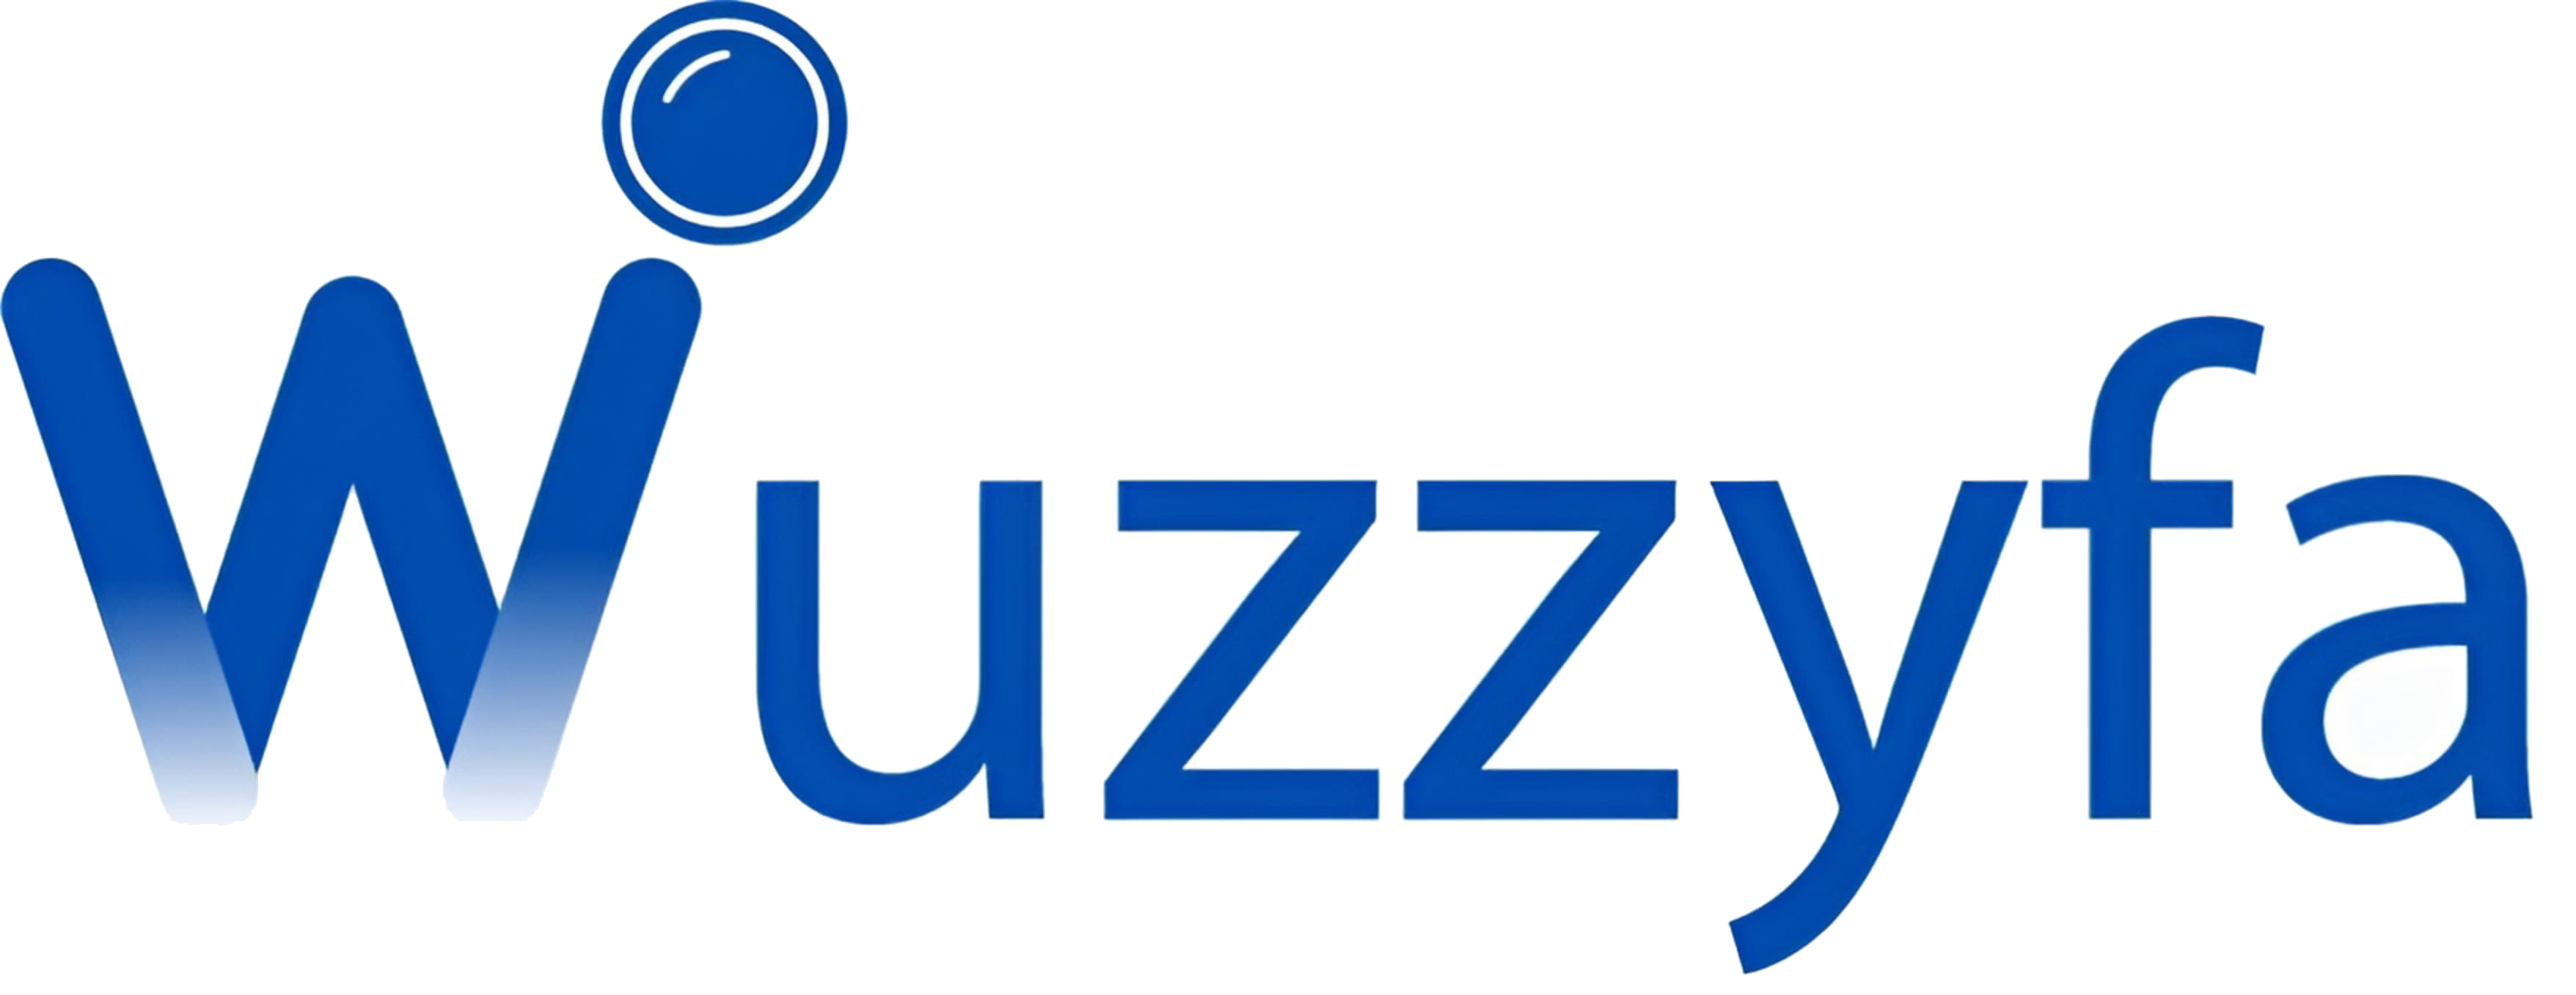 Wuzzyfa Logo